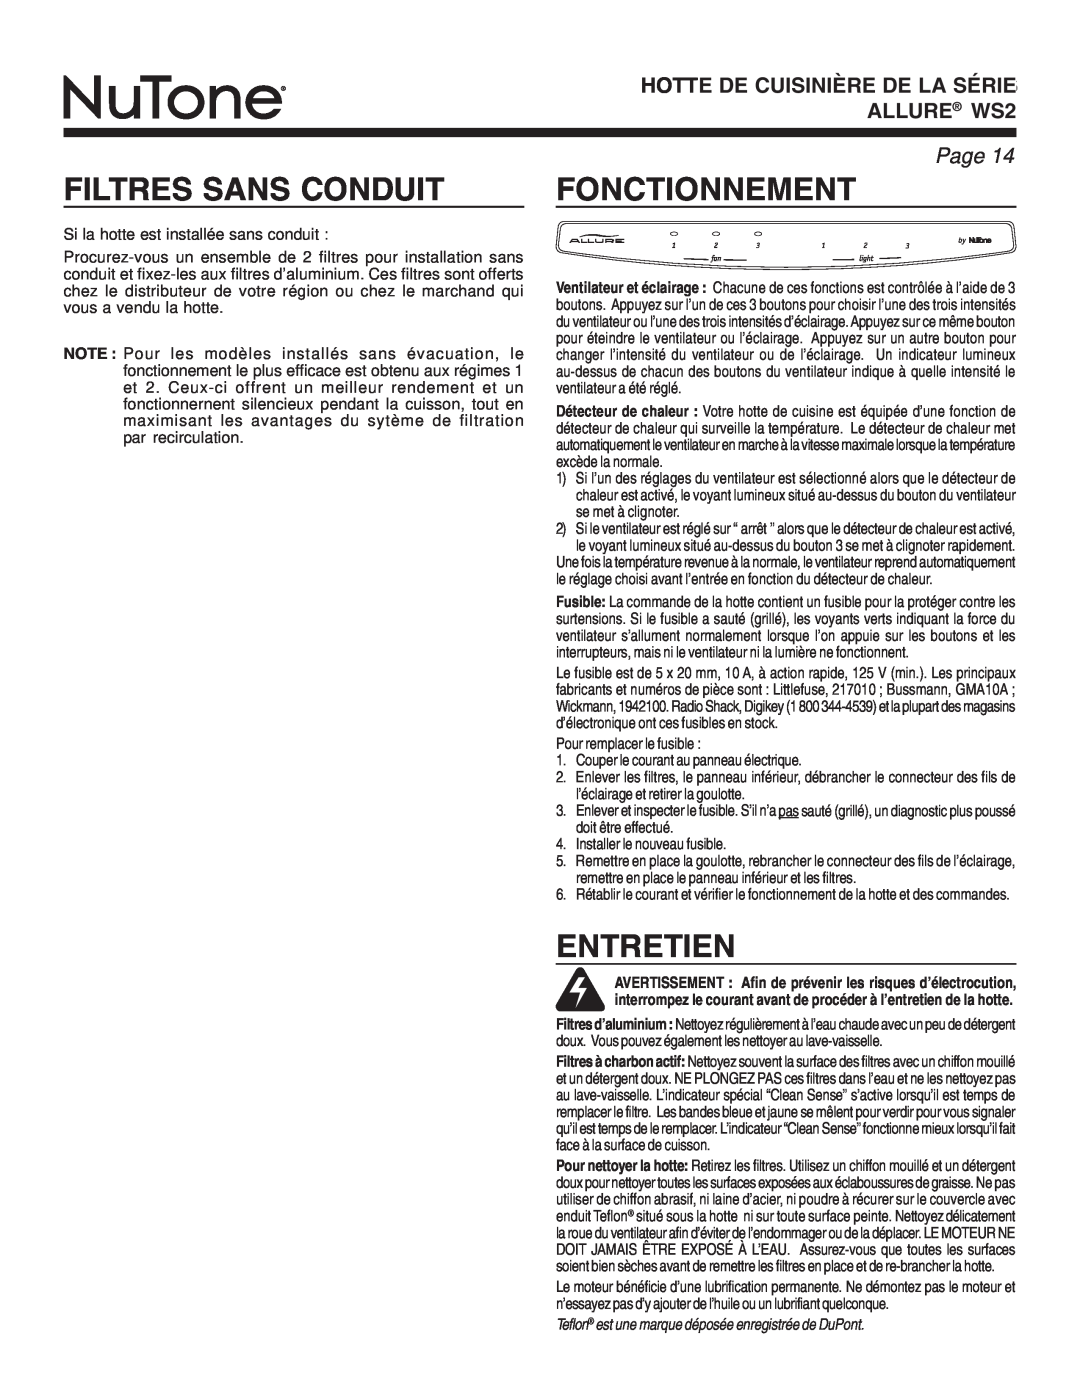 NuTone warranty Filtres Sans Conduit, Fonctionnement, Entretien, HOTTE DE CUISINIÈRE DE LA SÉRIE ALLURE WS2, Page 